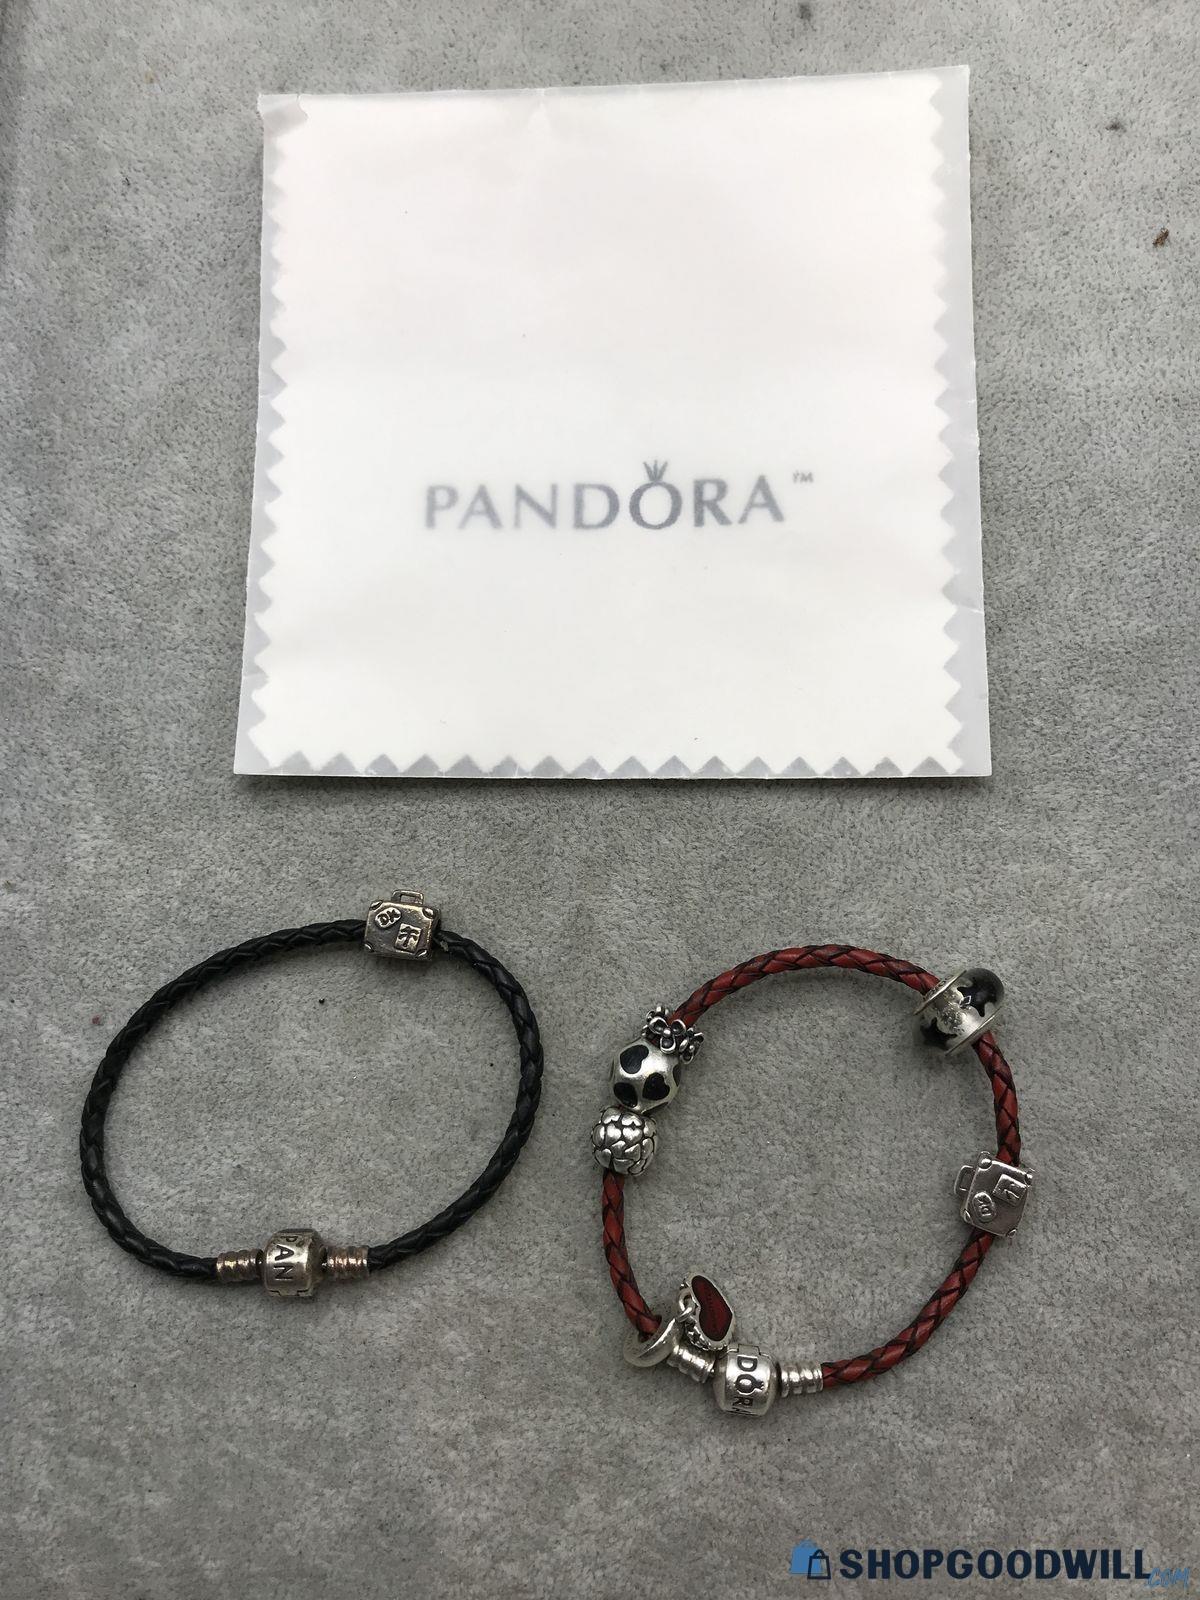 Pandora 925 Bracelets 33.38g - shopgoodwill.com